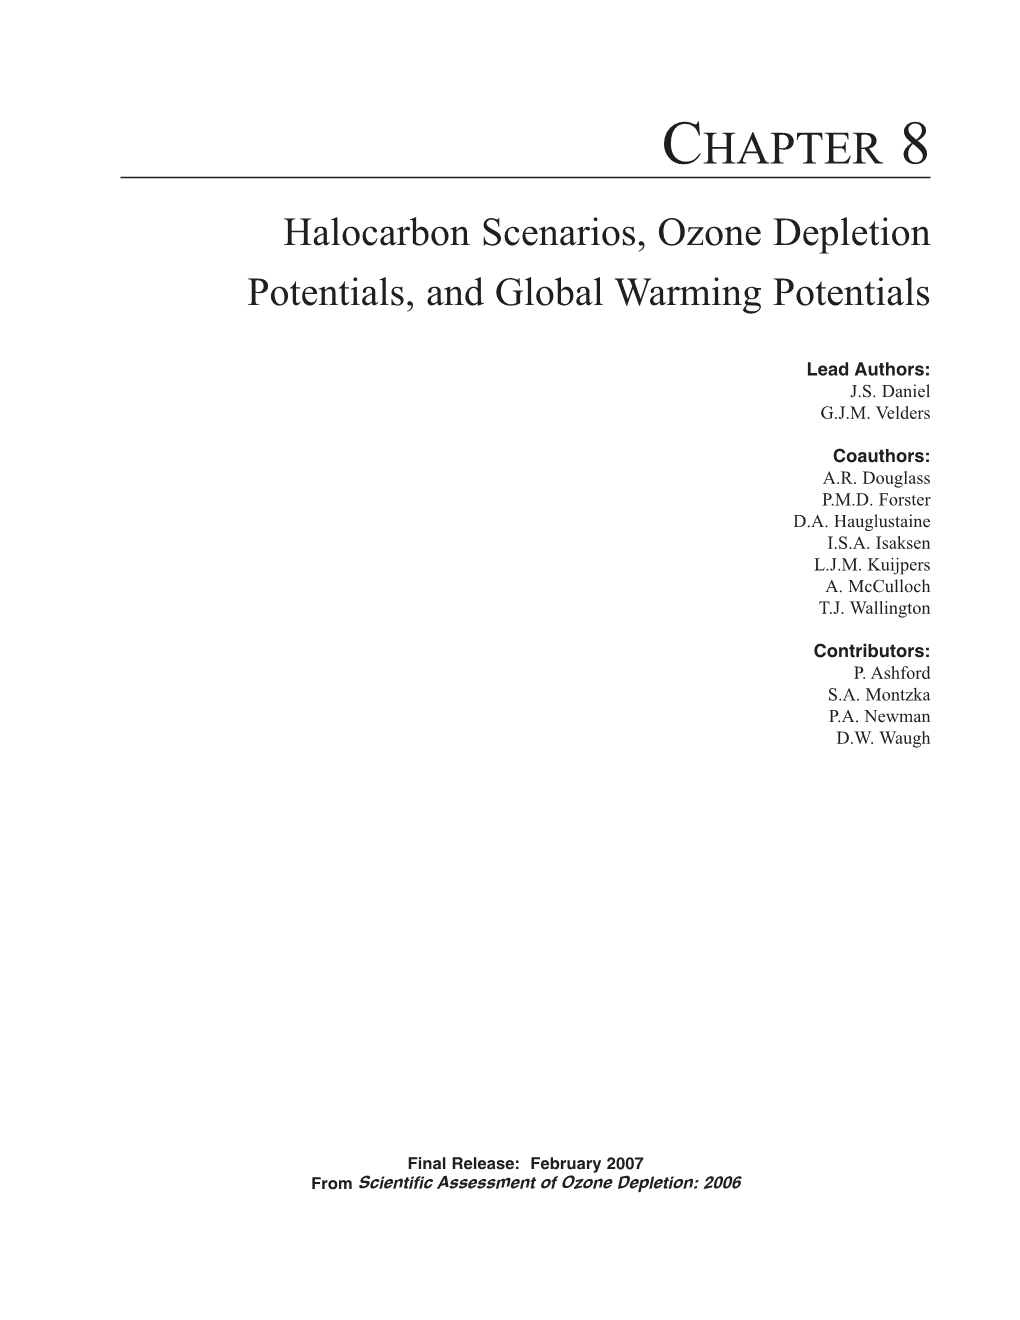 Halocarbon Scenarios, Ozone Depletion Potentials, and Global Warming Potentials